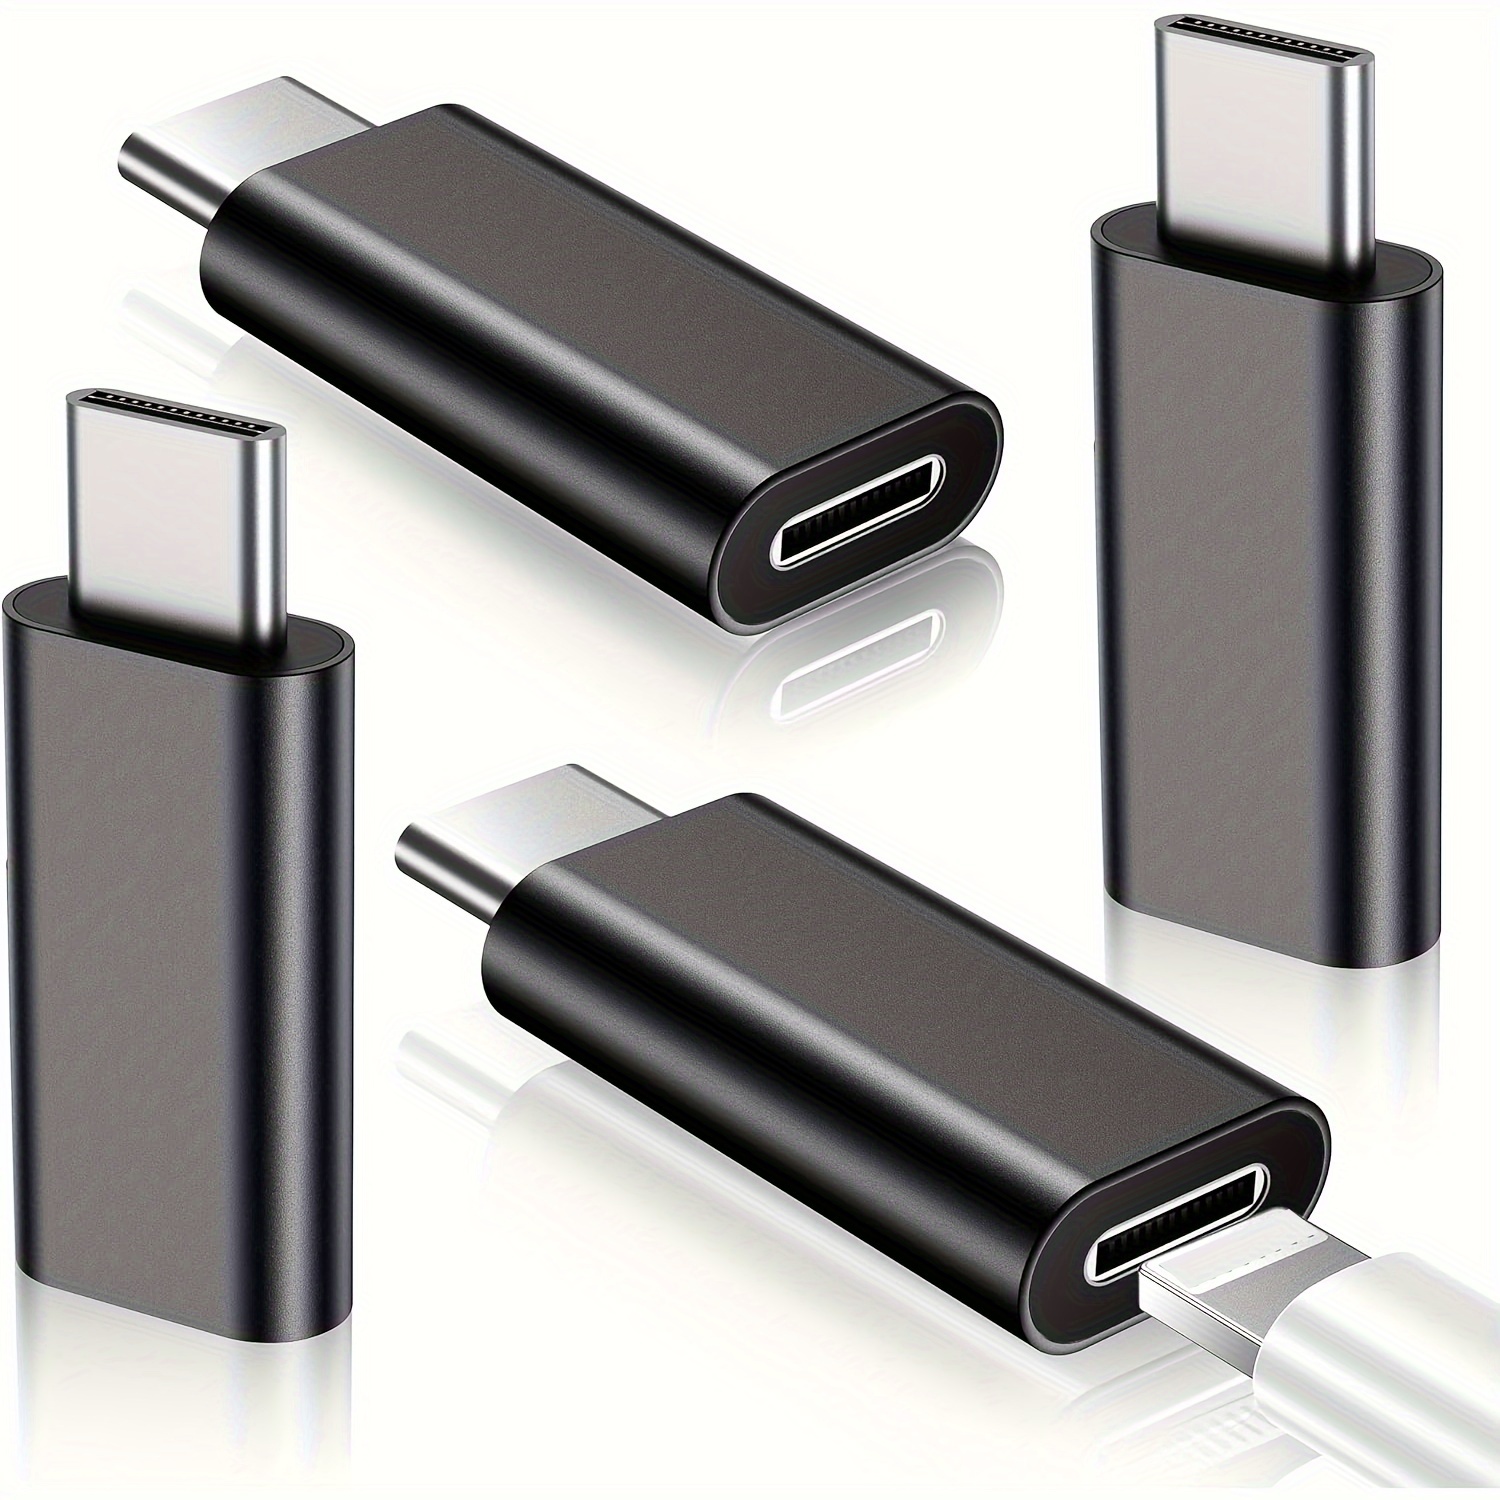 Adaptador USB C 3.1 a USB 3.0 USB 2.0 y USB C